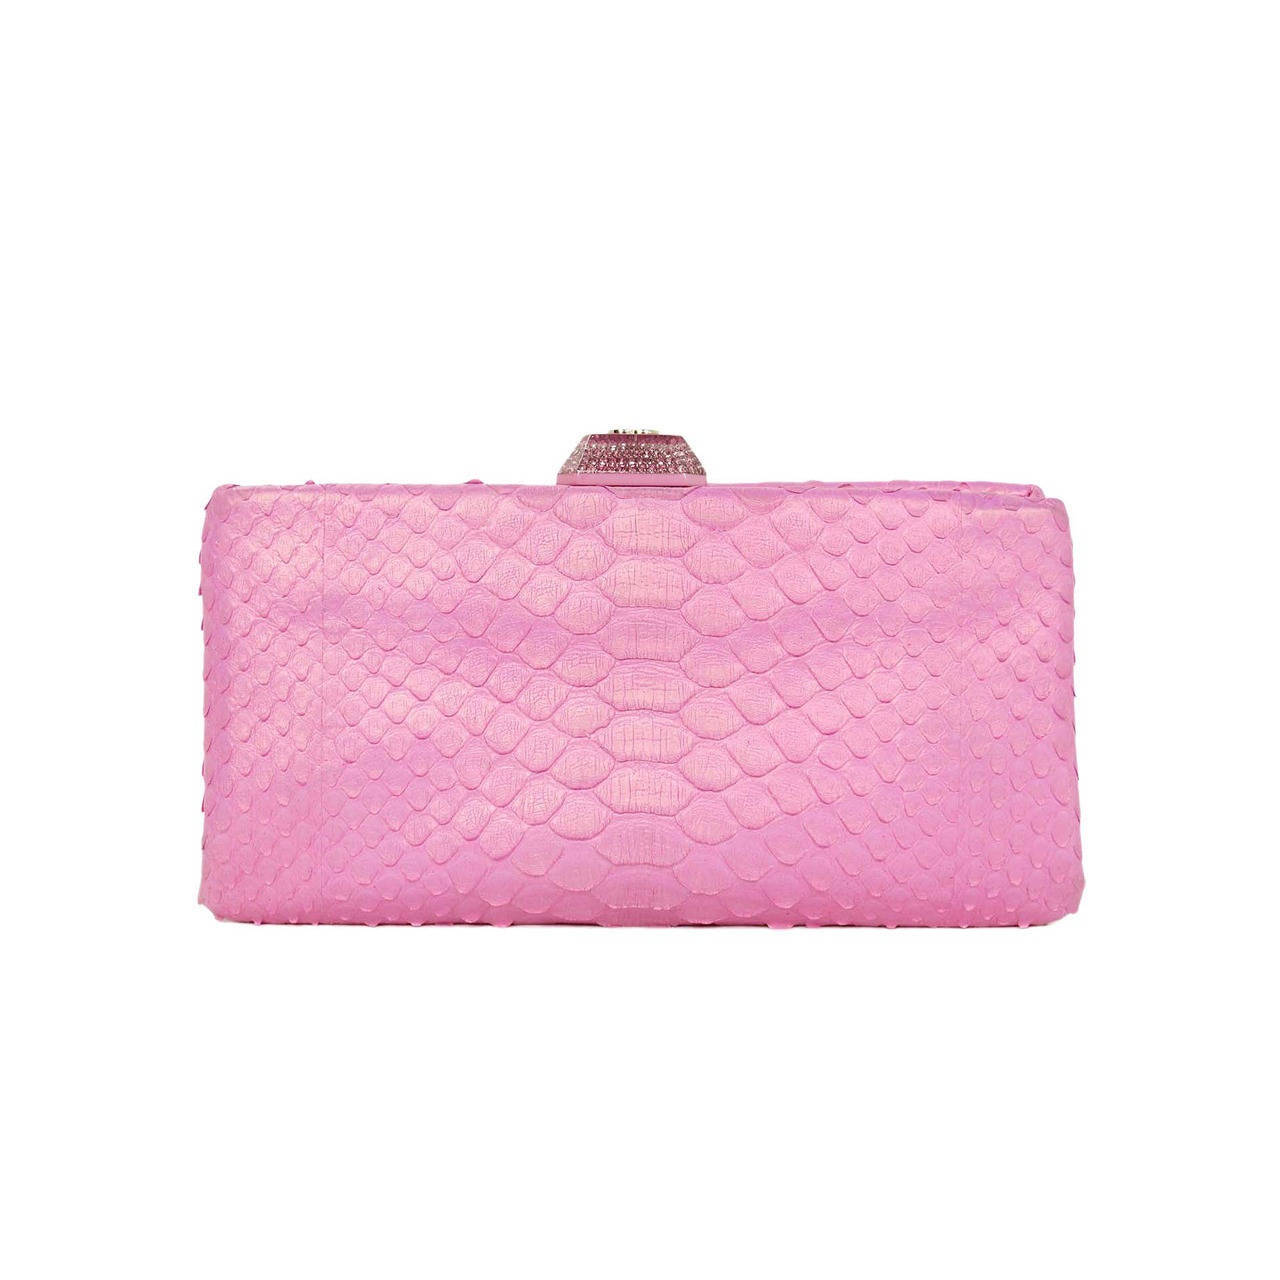 Chanel 2013 Pink Python Clutch Bag W Crystal Pushlock Rt.$3, 200